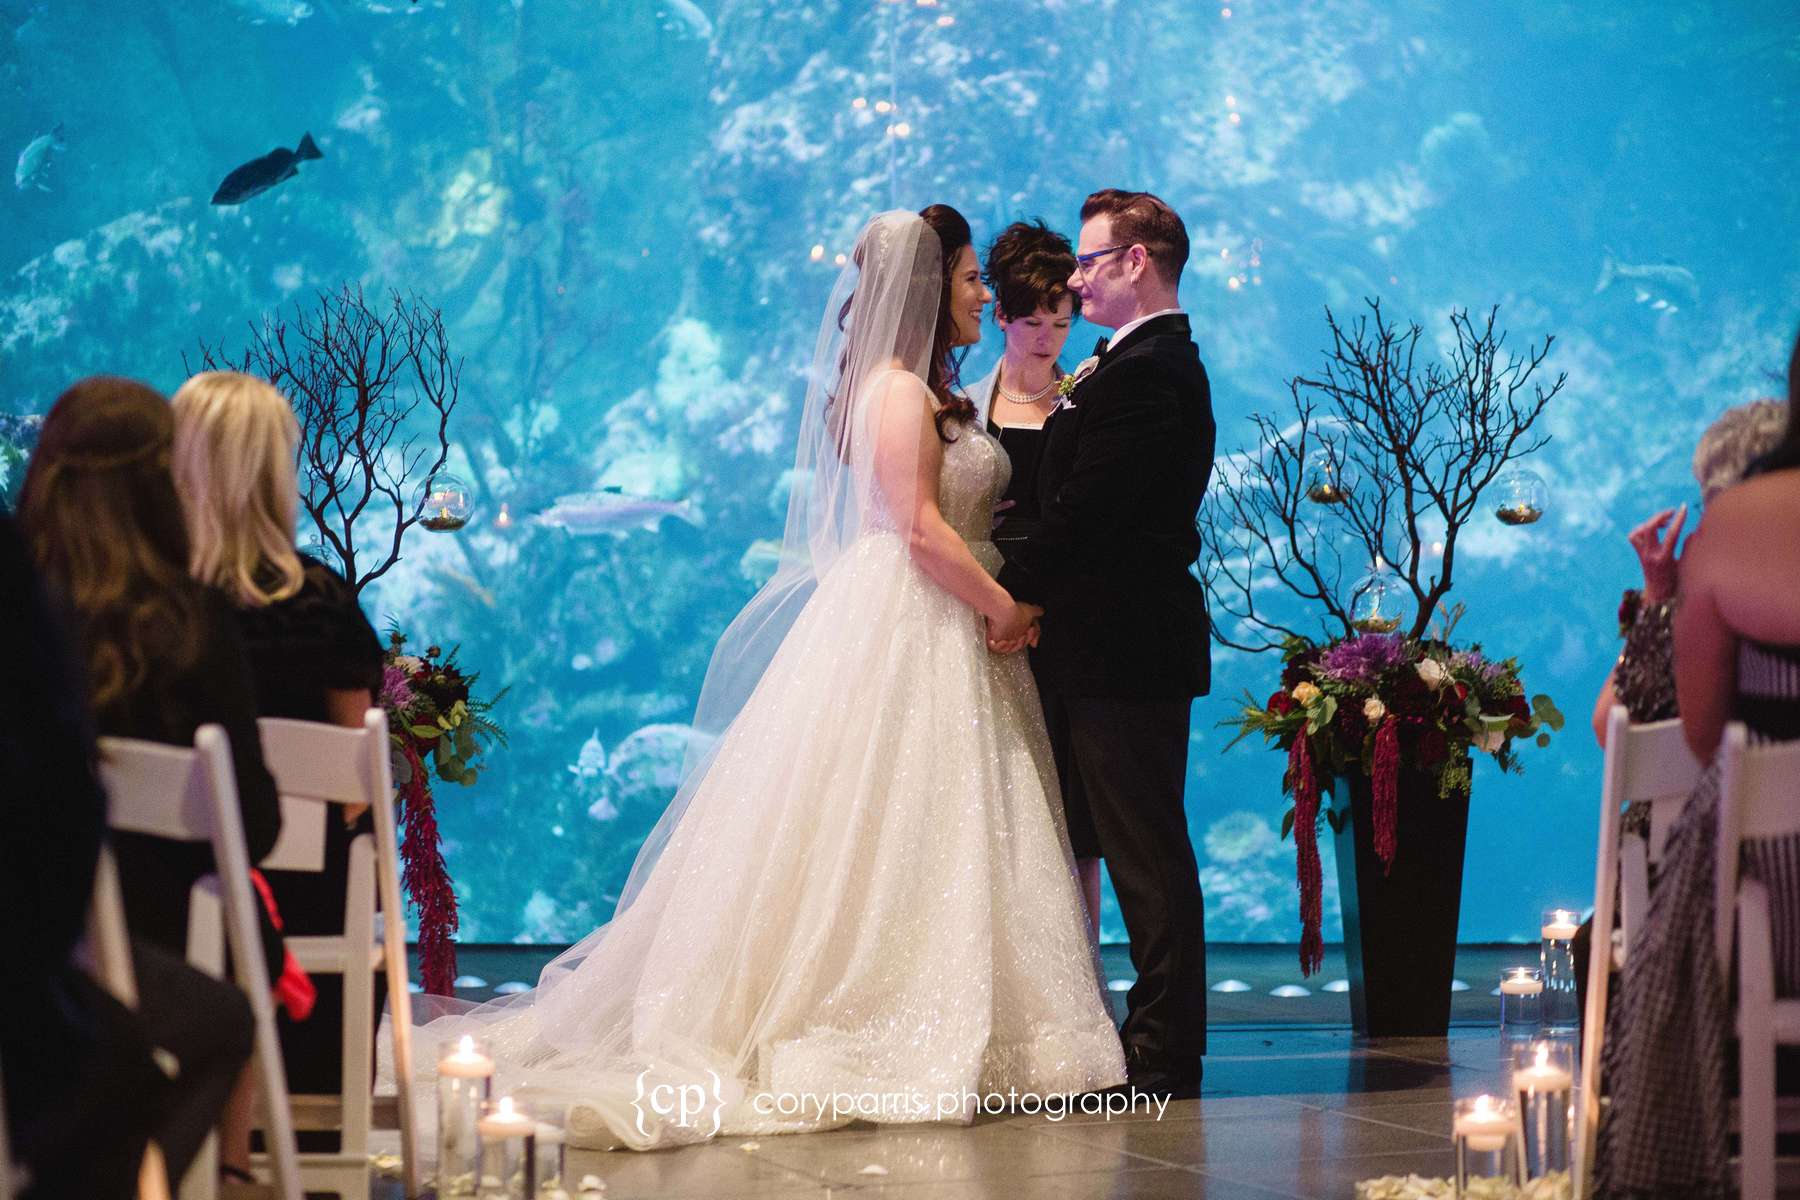 Wedding ceremony at the Seattle Aquarium